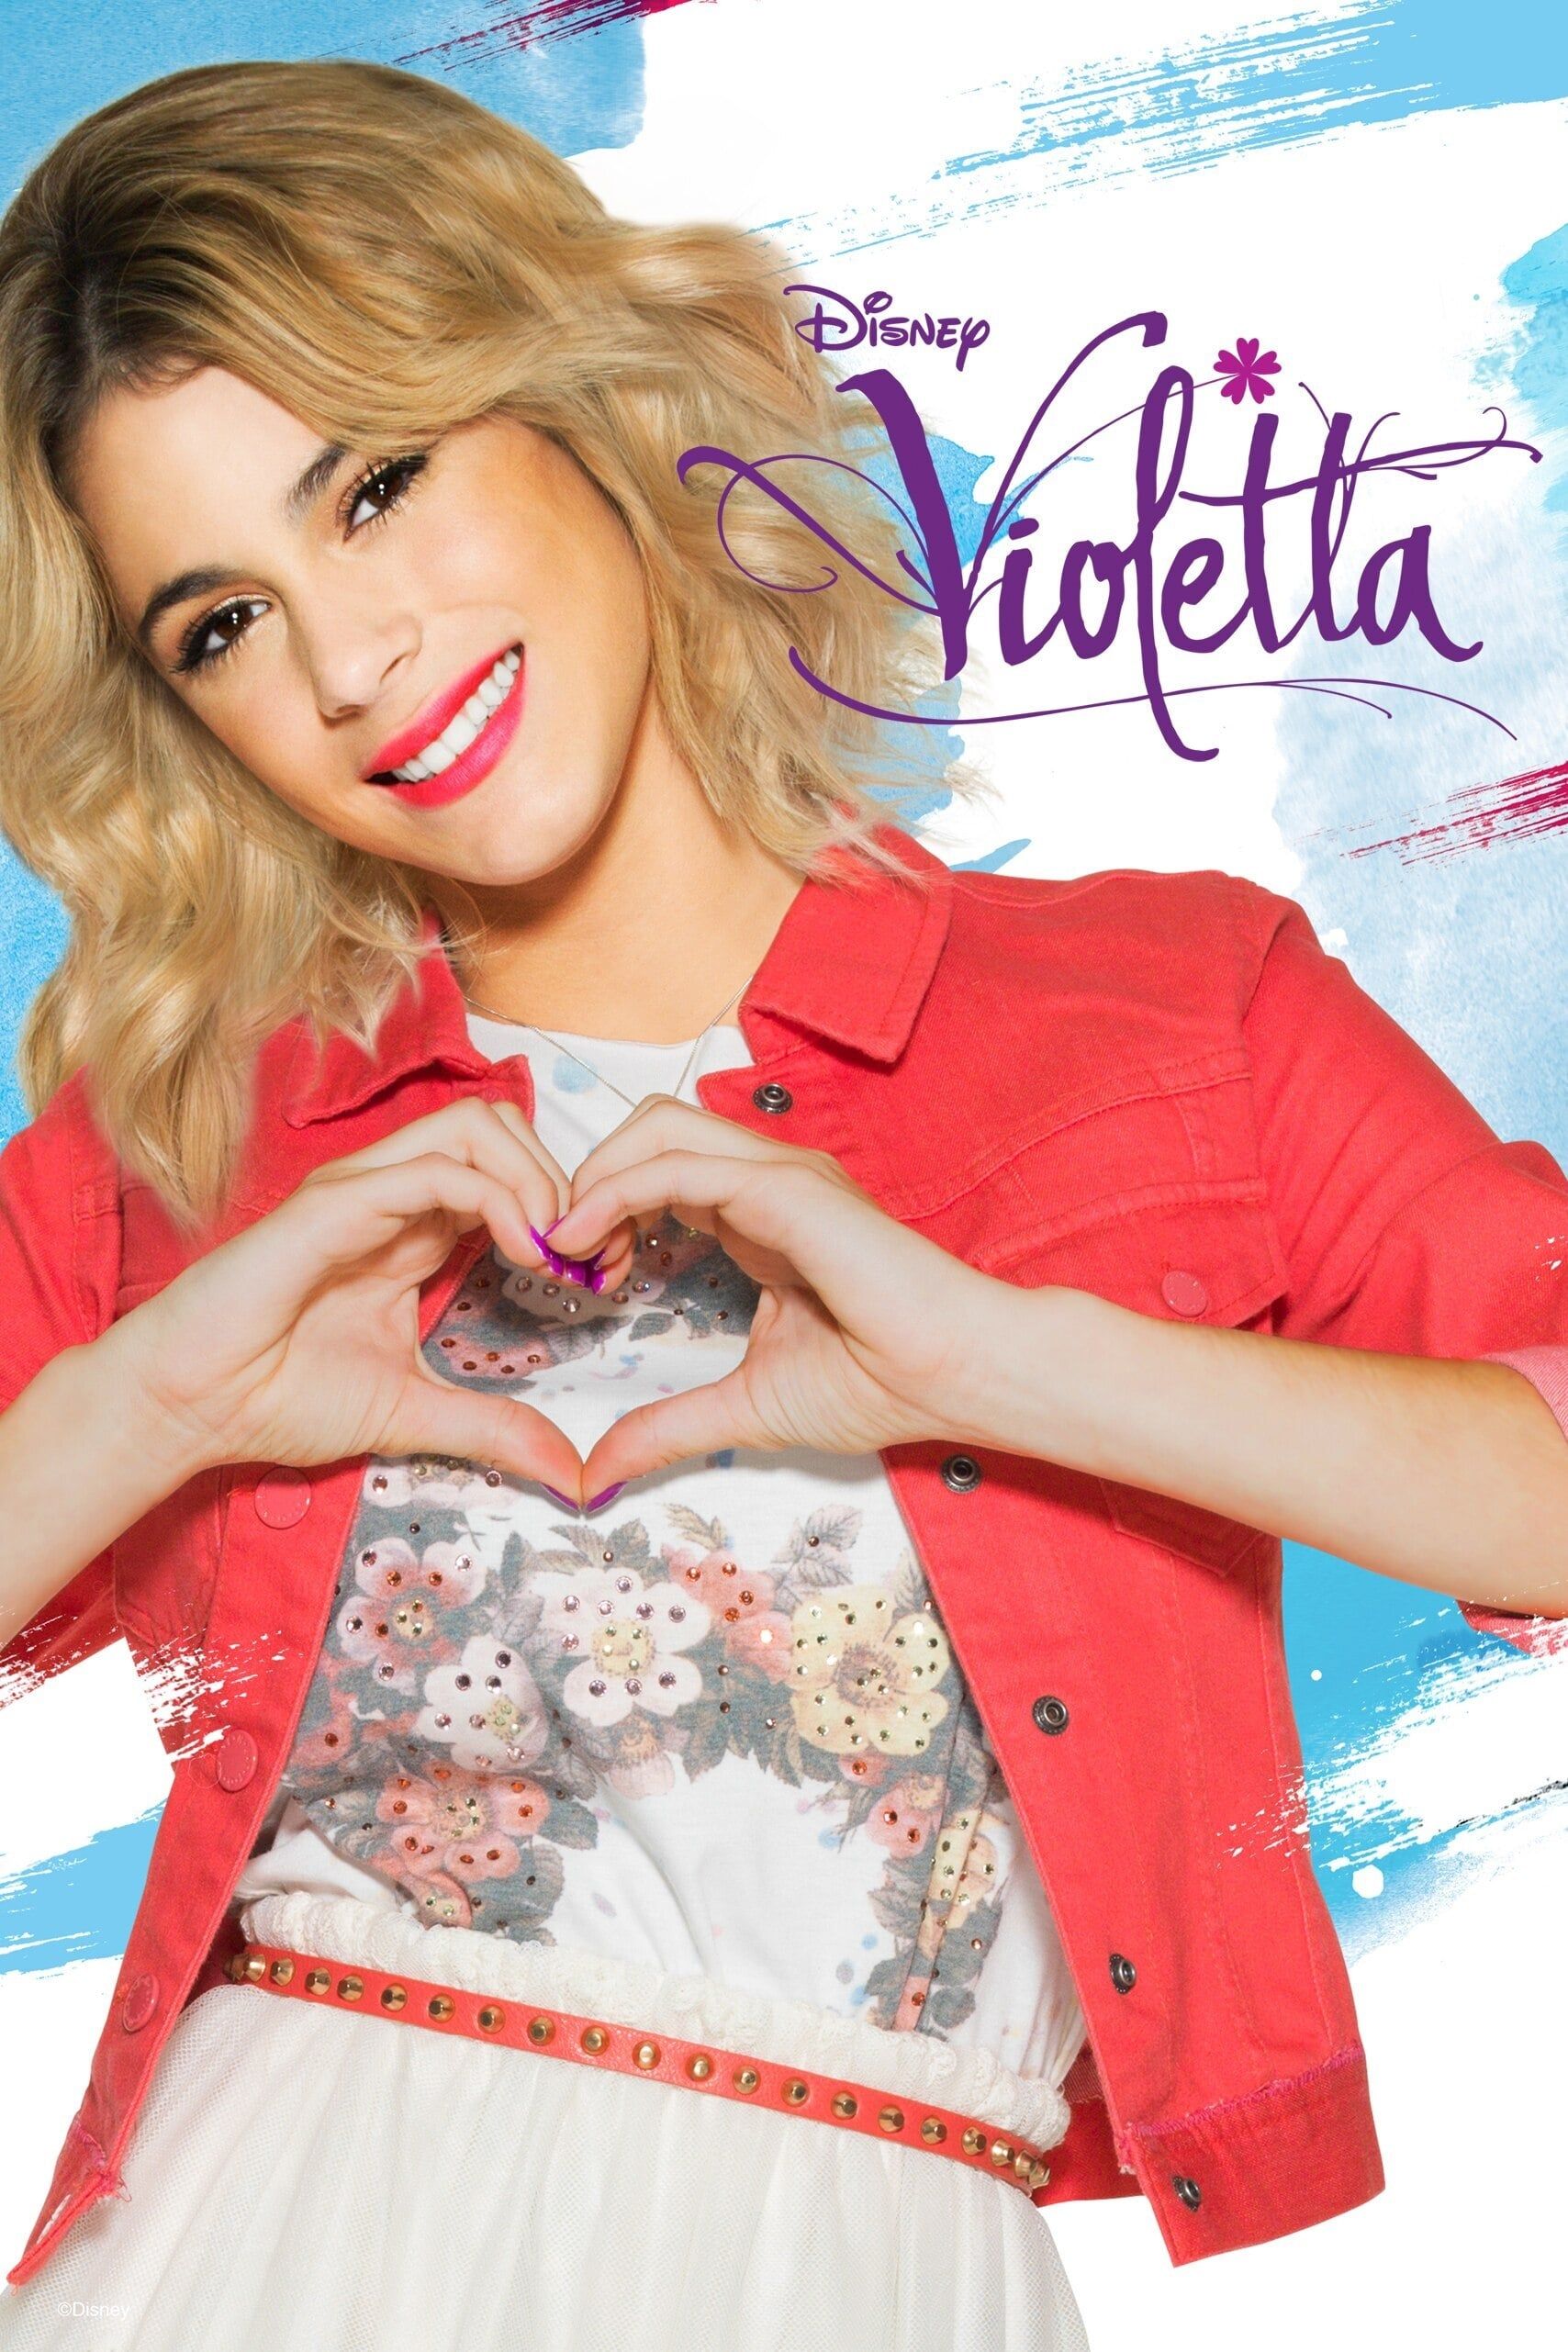 Violetta - watch tv show streaming online